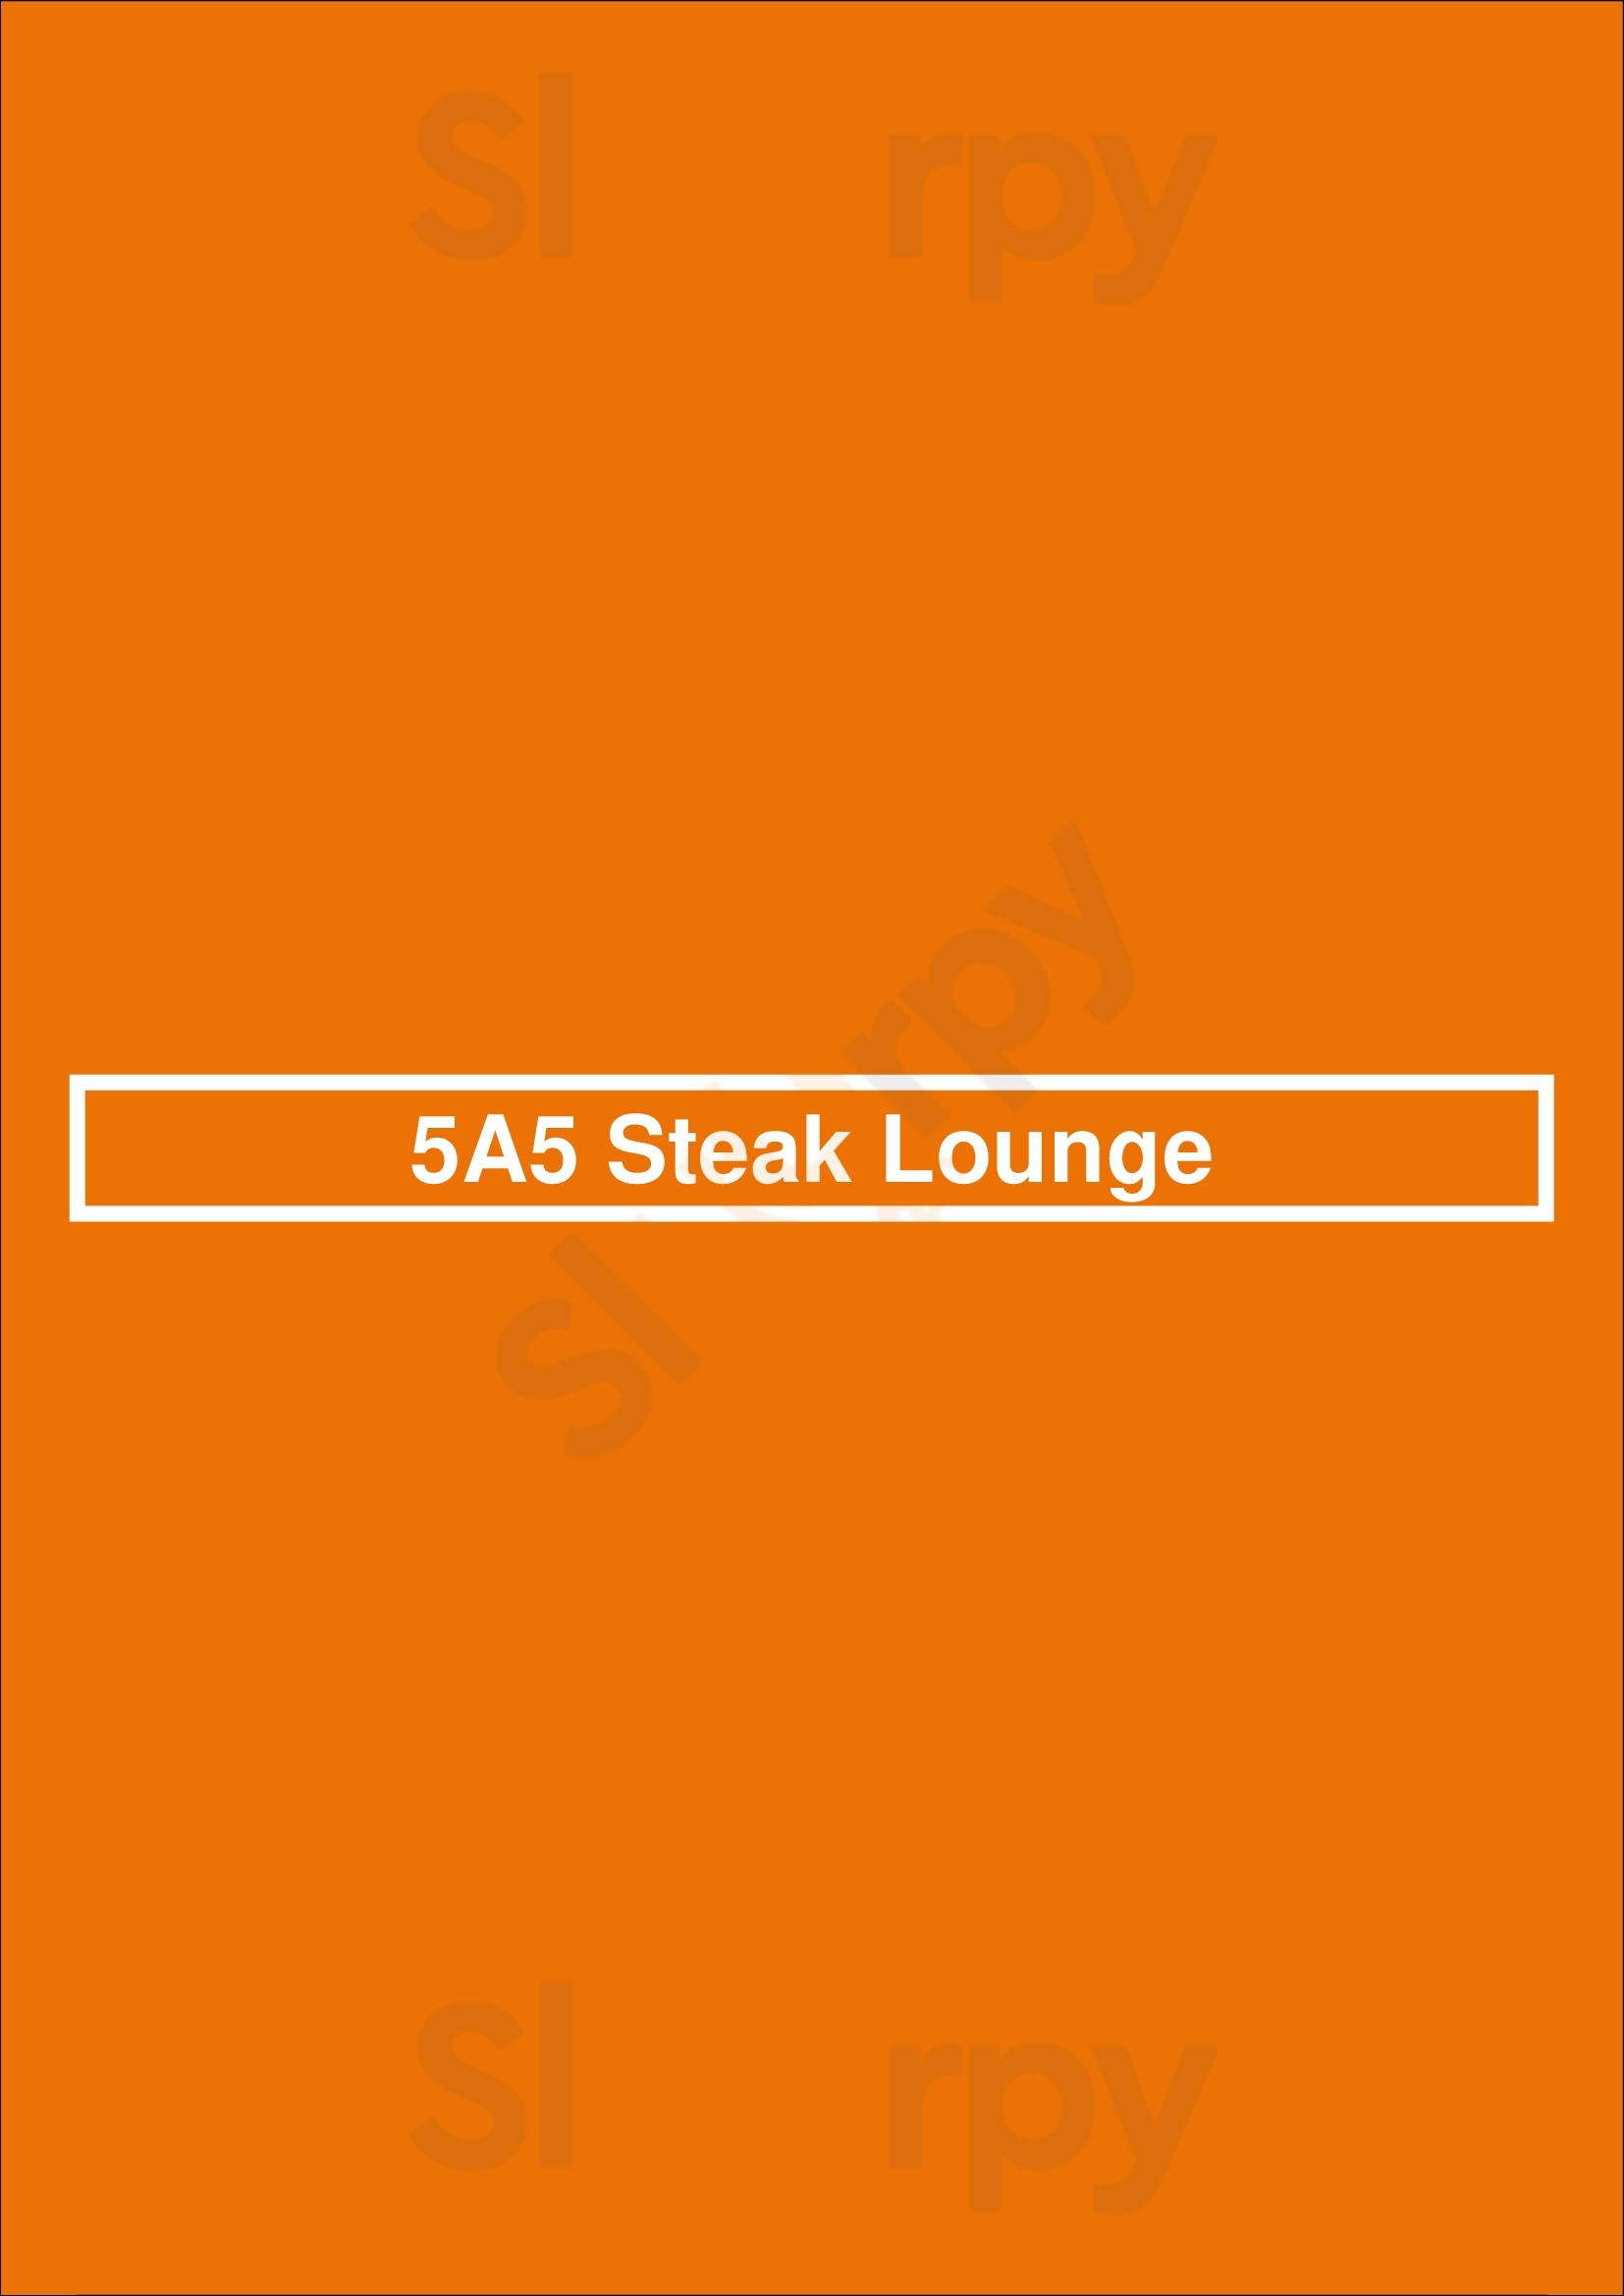 5a5 Steak Lounge San Francisco Menu - 1